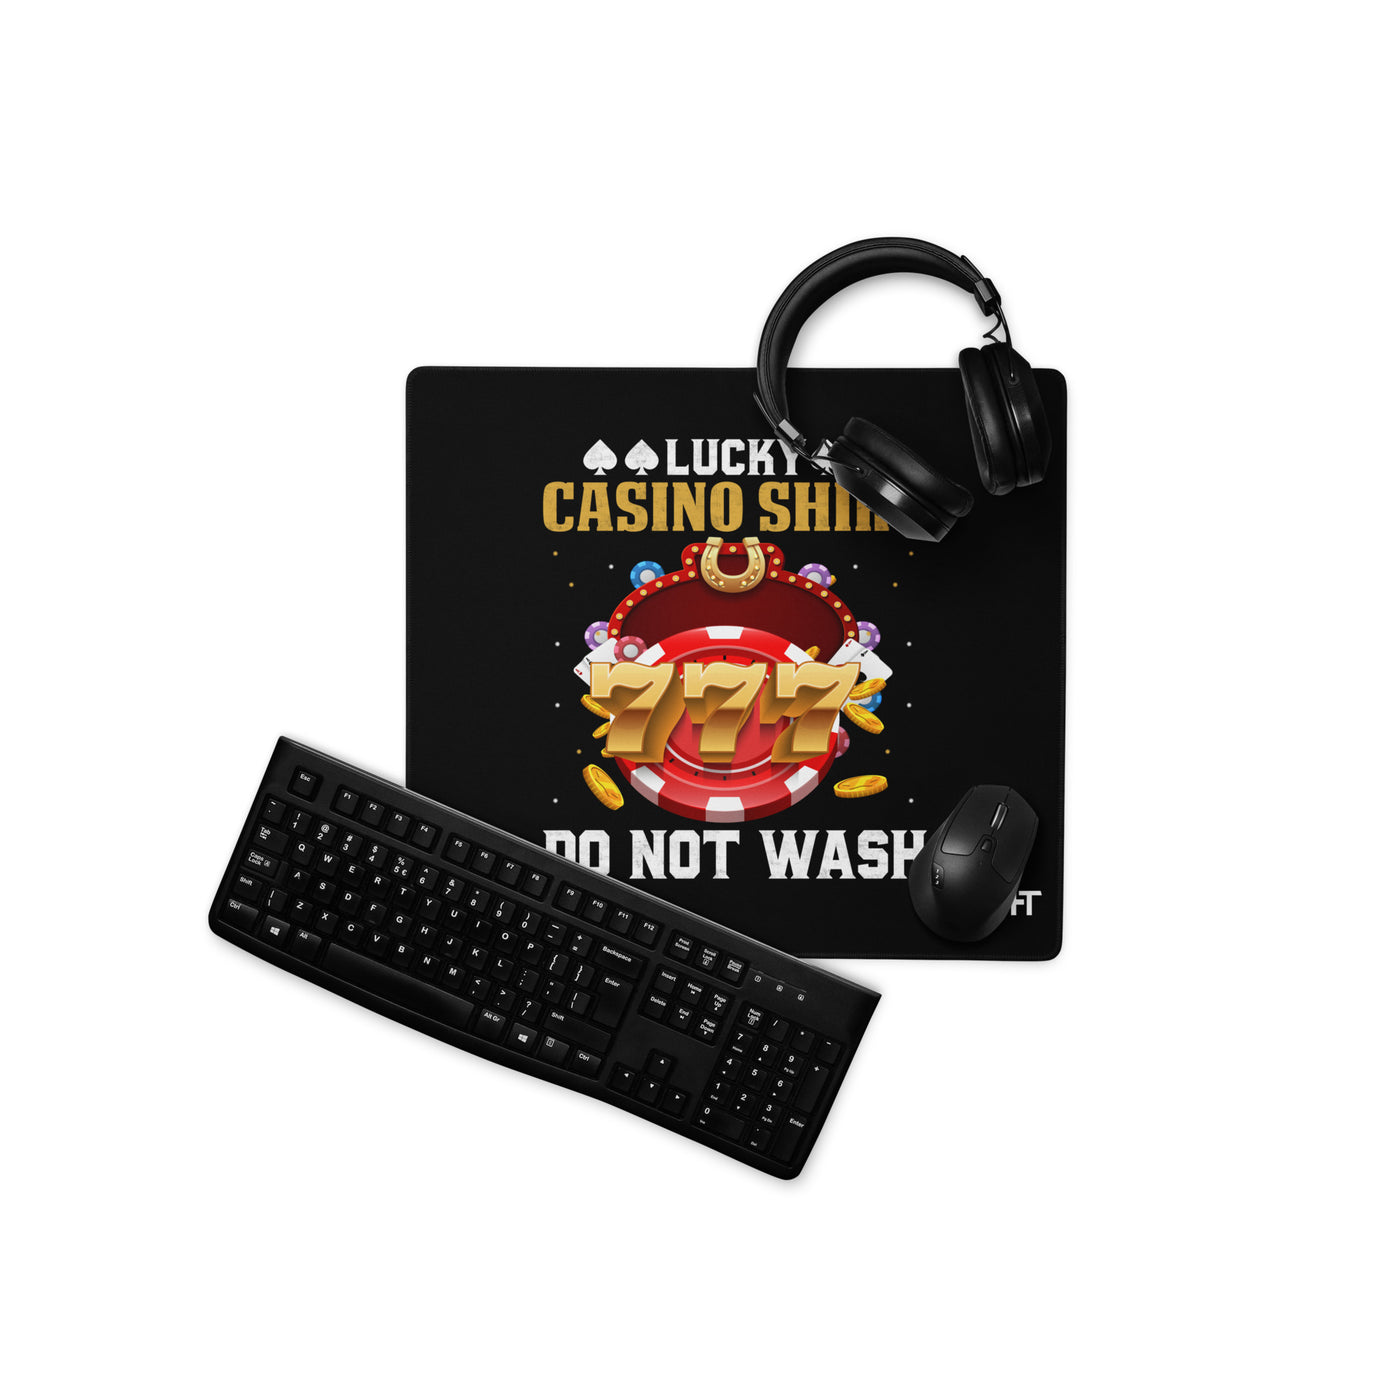 Lucky Casino Shirt Do Not Wash - Desk Mat